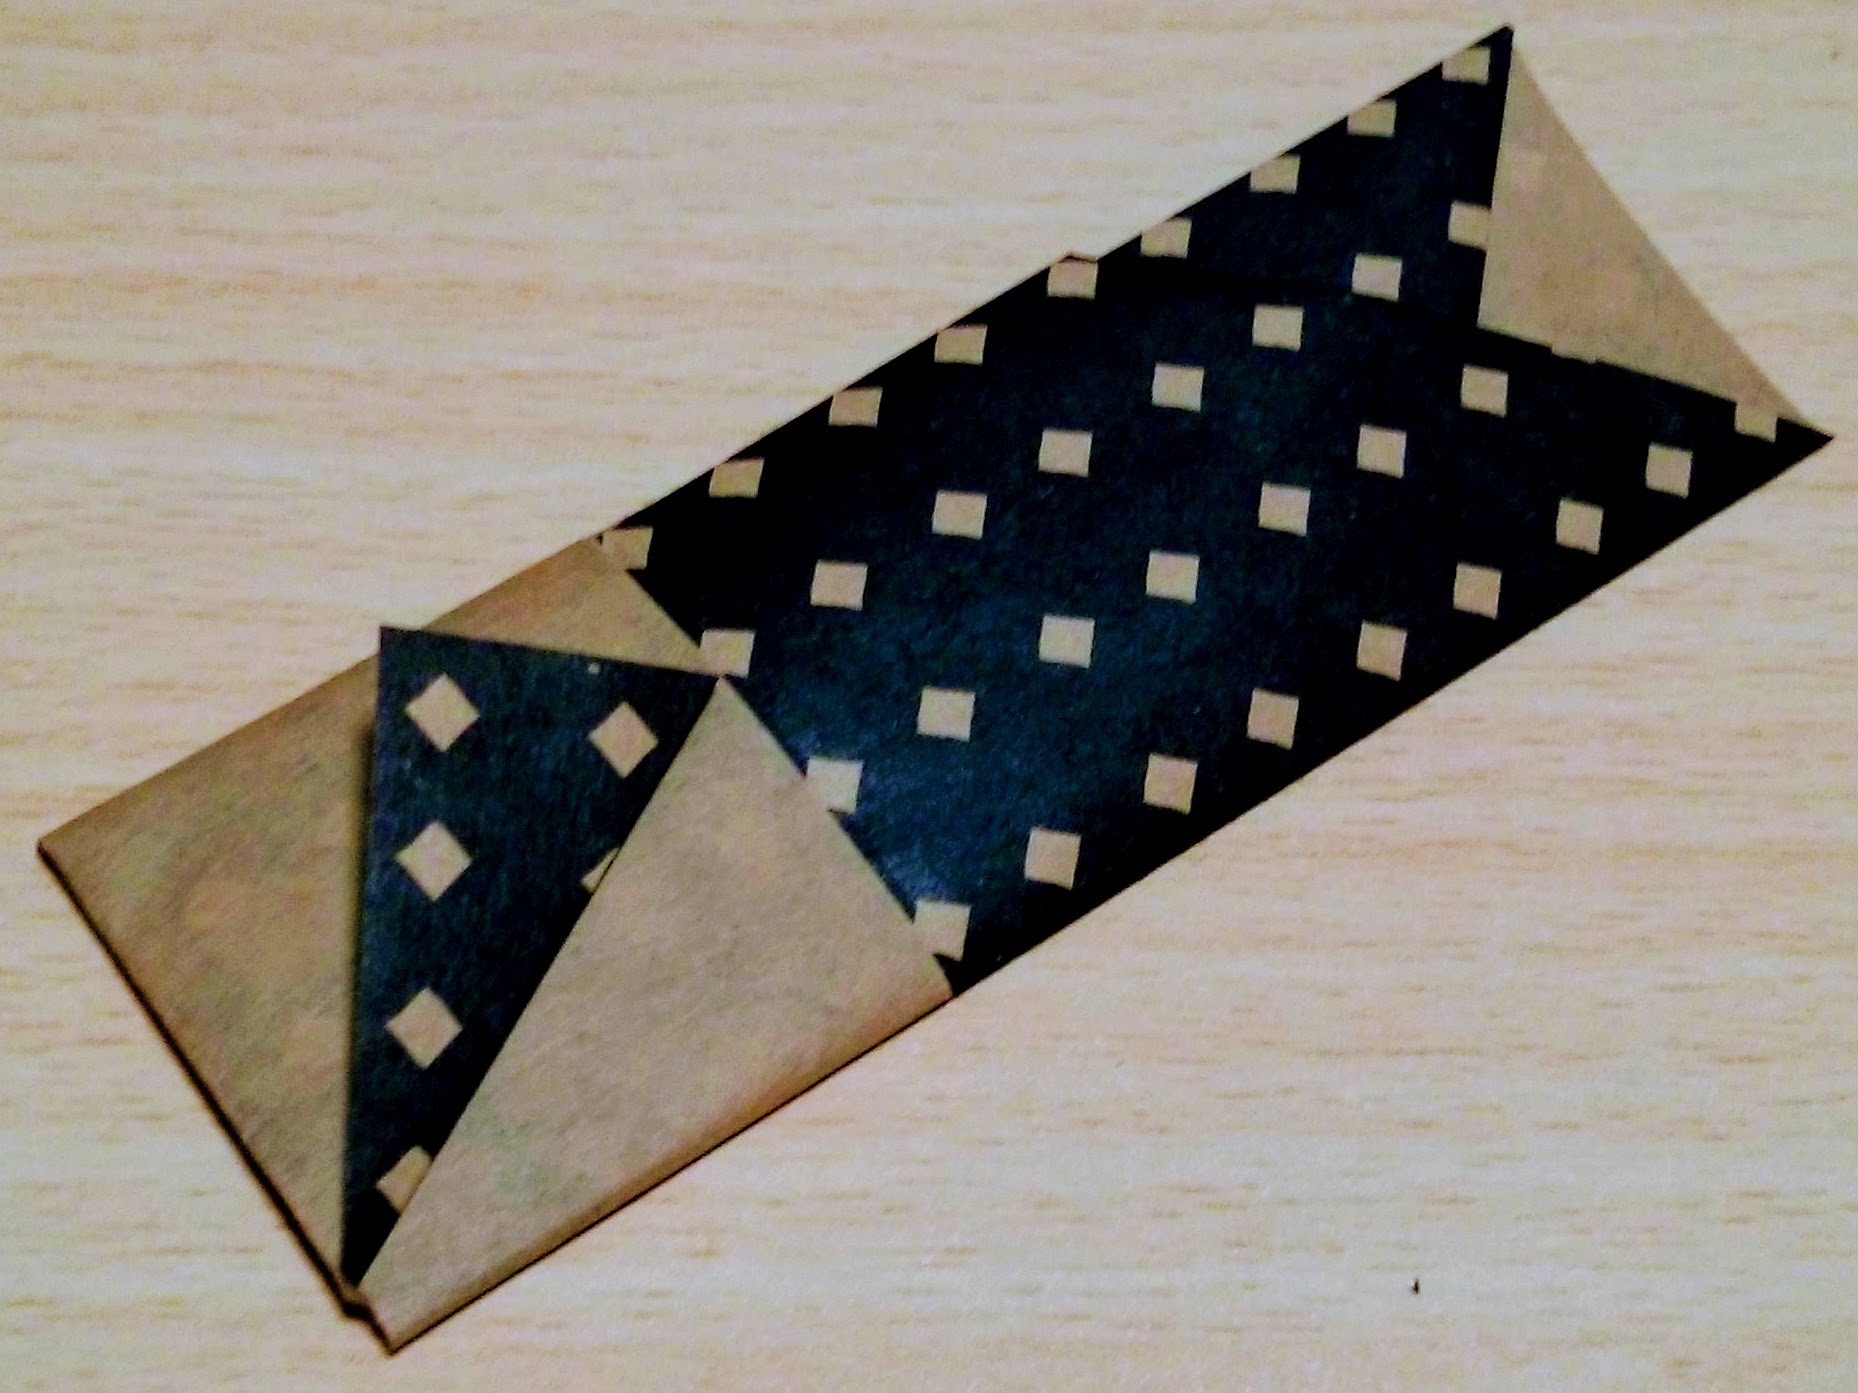 折り紙で作る 箸袋 の折り方 簡単でおしゃれな箸入れの作り方6選をご紹介 暮らし の